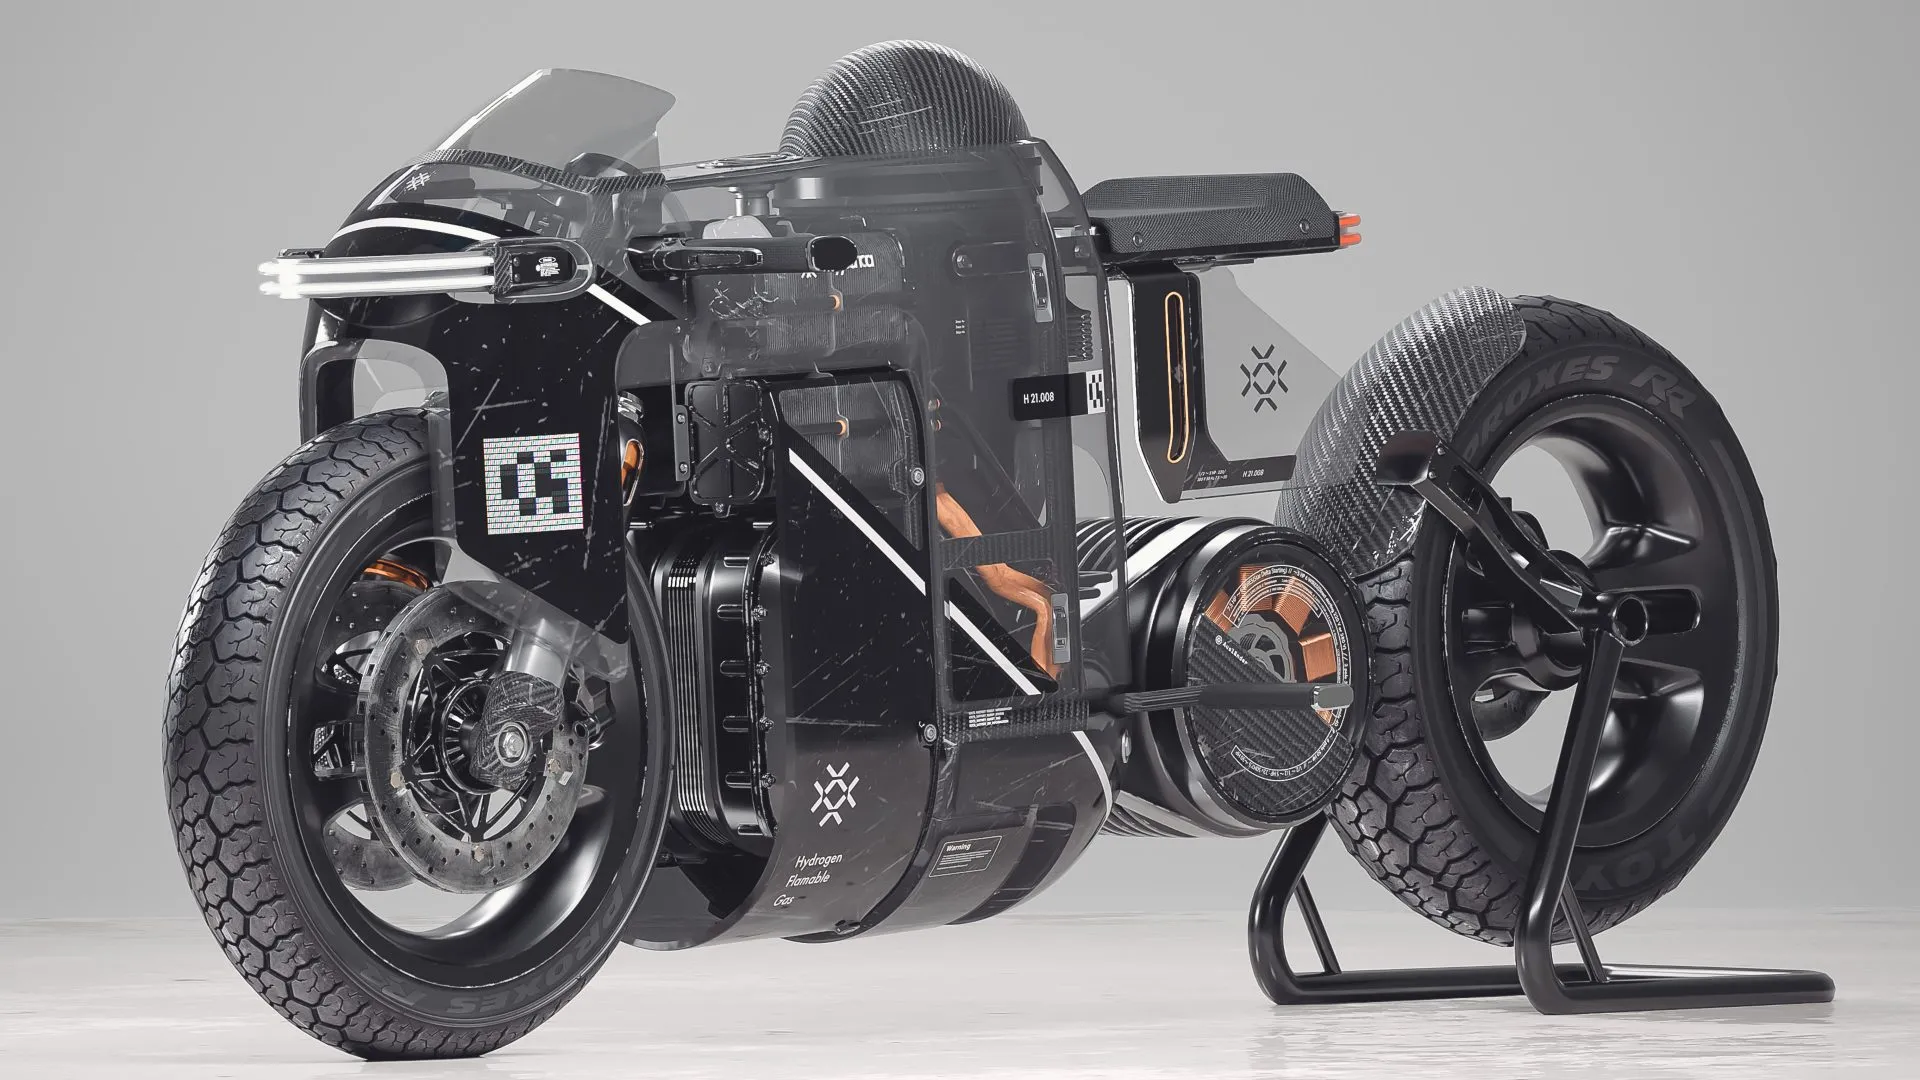 La Hydra AAA 01 es un proyecto de moto con pila de combustible muy poco convencional